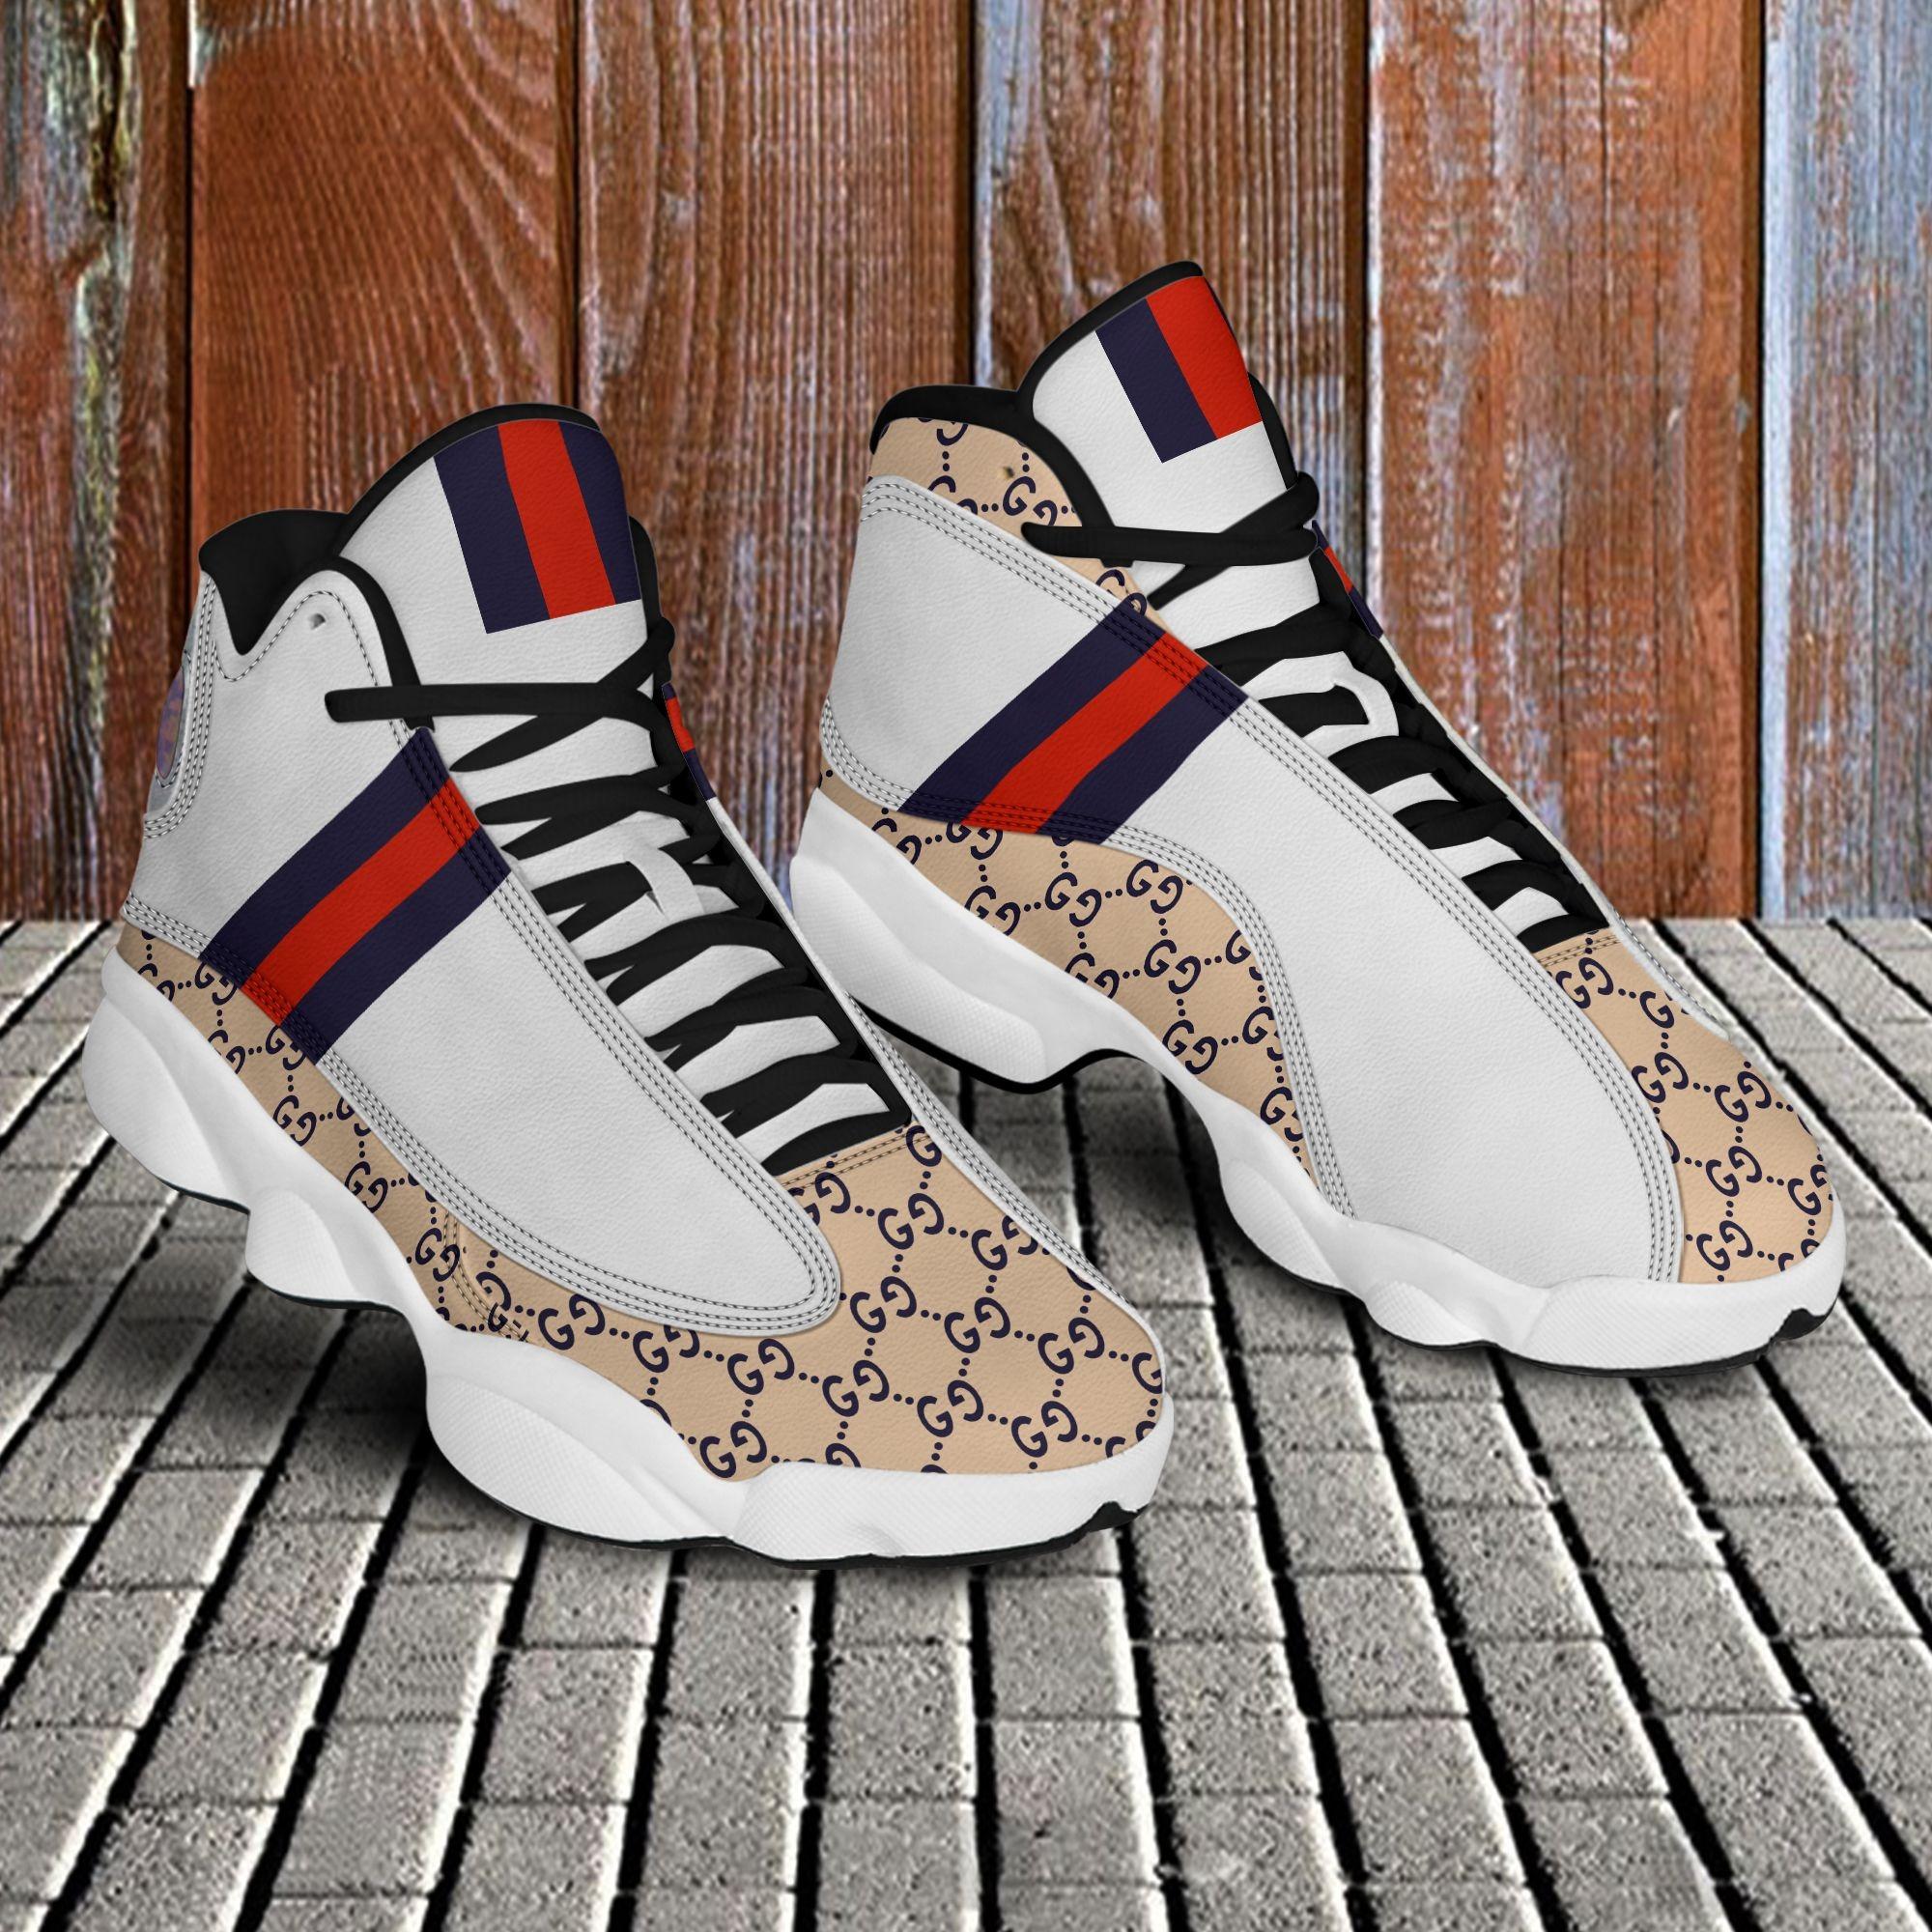 Gucci Air Jordan 13 Sneaker JD14068 – Let the colors inspire you!